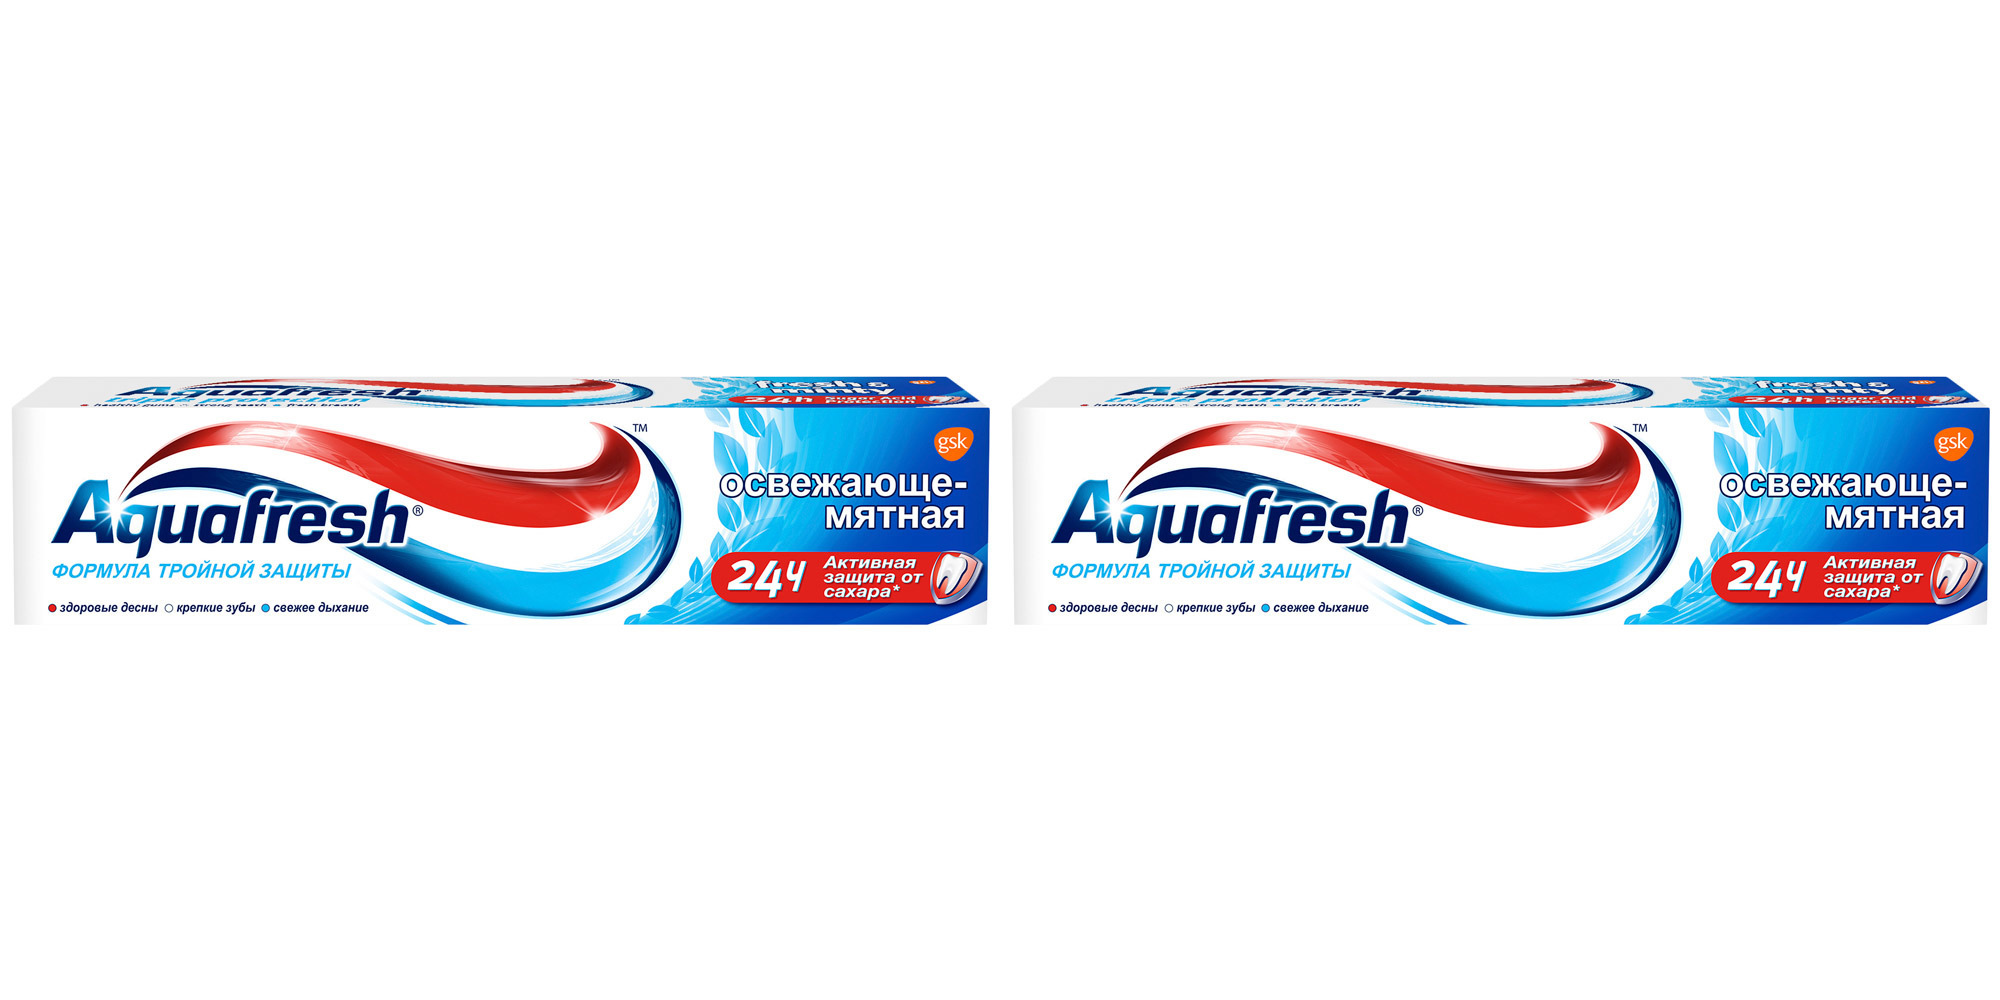 Aquafresh зубная паста. Реклама Аквафреш йога. Aquafresh лого. Зубная паста освежающая мятная Aquafresh формула тройной защиты. Купить пасту аквафреш